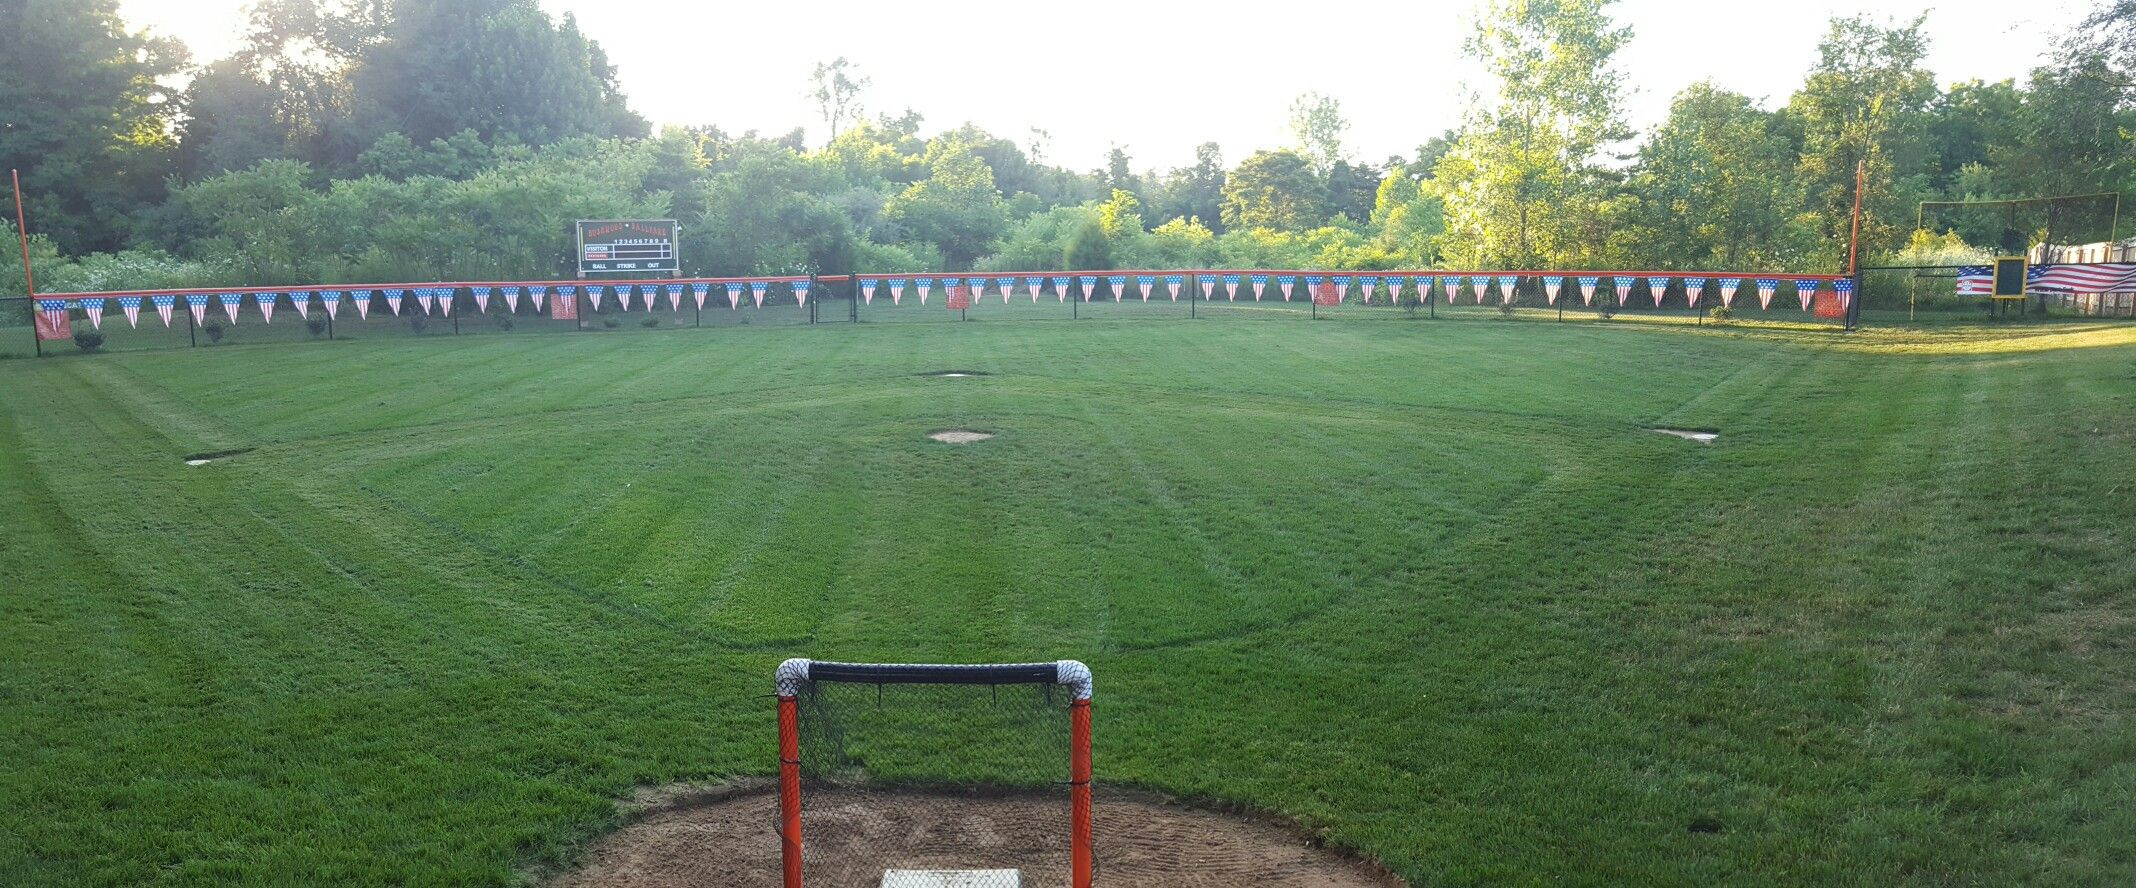 Backyard Baseball Field
 Wiffle ball field